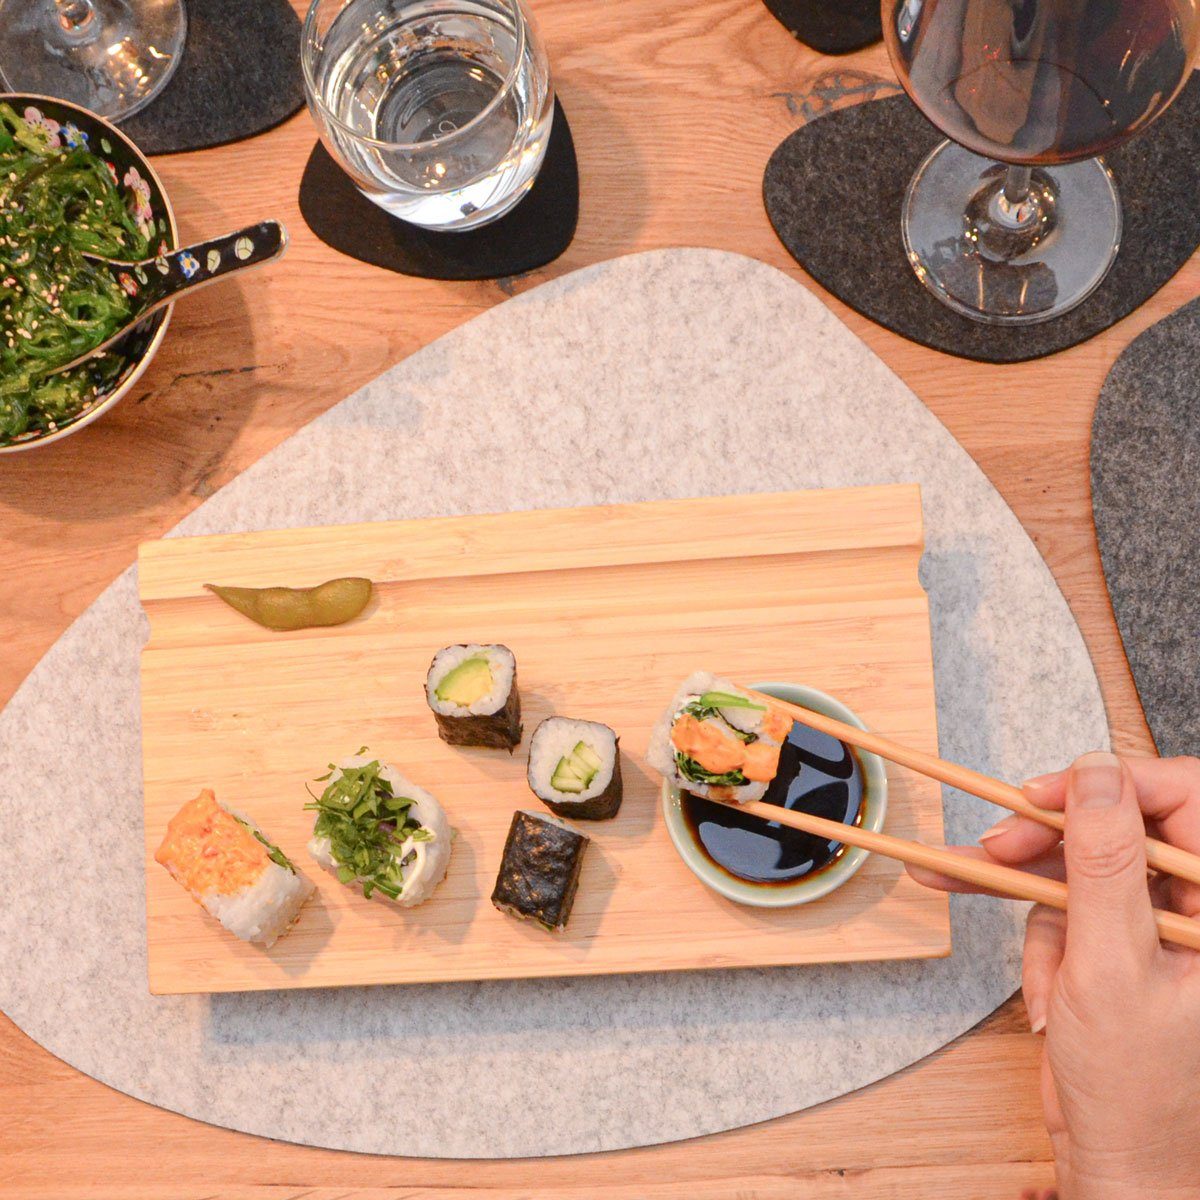 Servierplatte Servierplatten, Japanisches 20-tlg), Brett Holz, 4 für Komplettset DuneDesign (Set, 27x16x4 Sushi 4x Personen